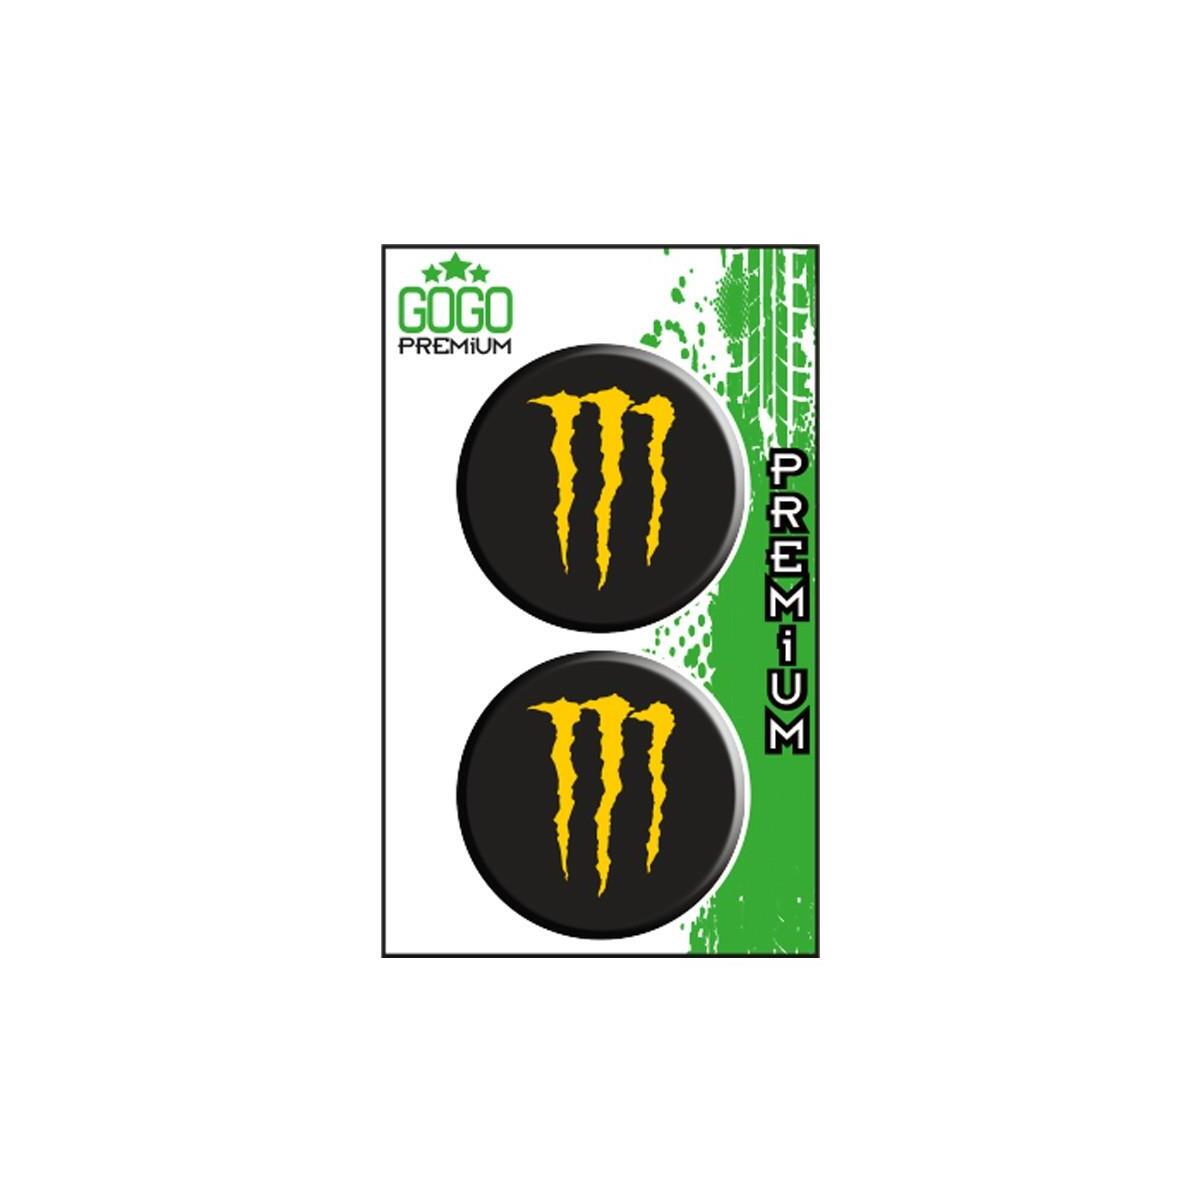 Sevenkardeşler Monster 1 (5X5 Cm) İkili Damla Etiket